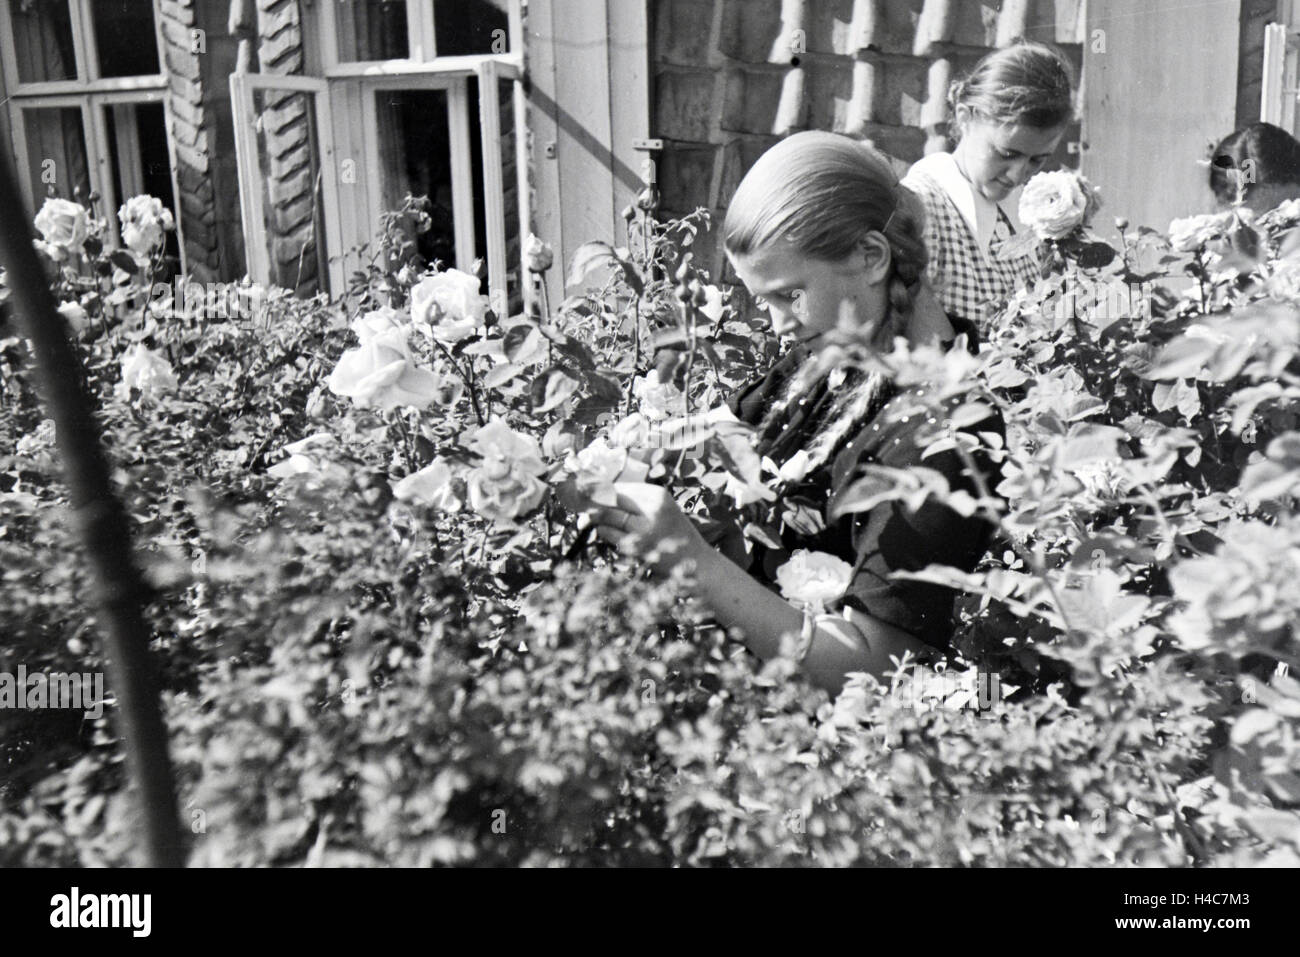 Schülerinnen des Schülerheims Kolonial Harzburg bei der Gartenarbeit, Deutsches Reich 1937. Les étudiants de l'école résidentielle coloniale Harzburg travaillant dans le jardin, Allemagne 1937. Banque D'Images